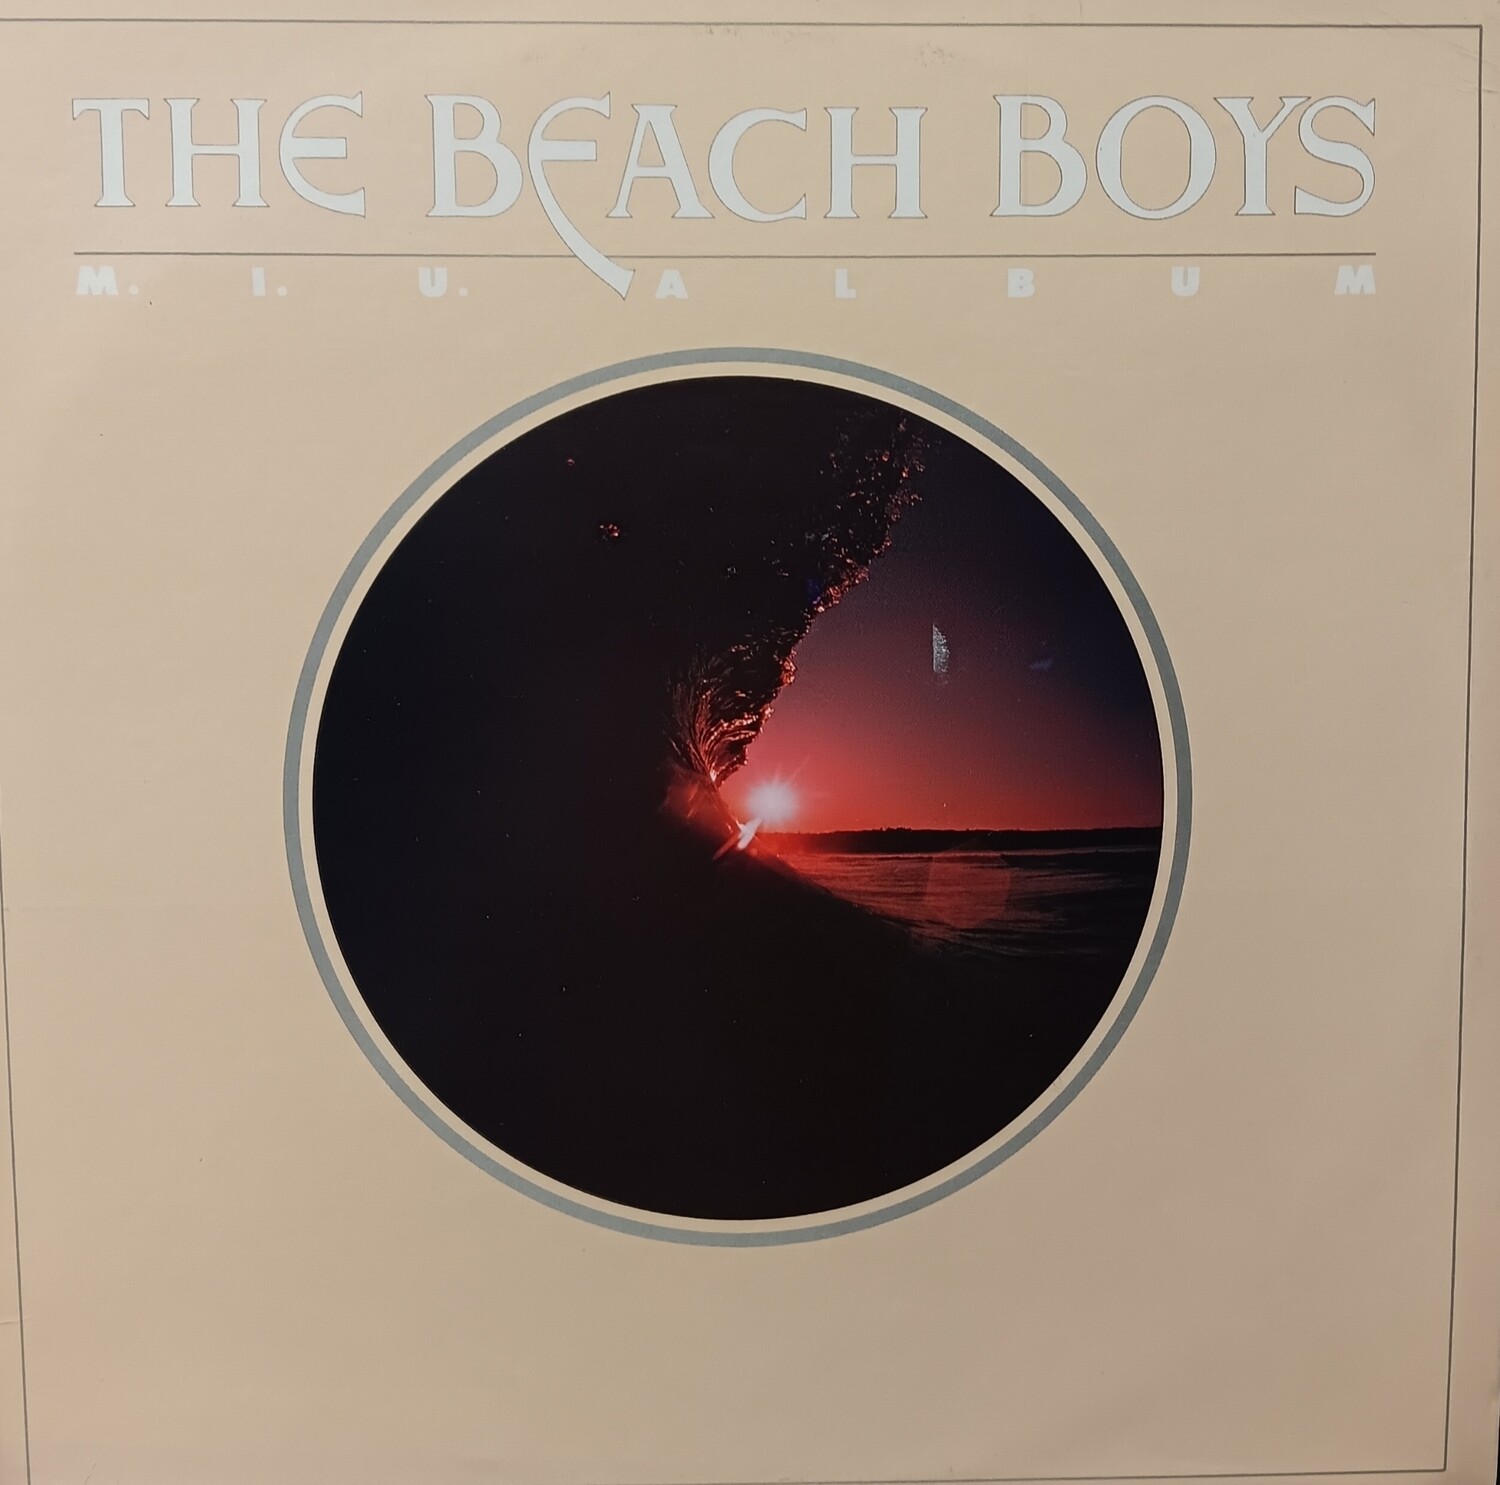 THE BEACH BOYS - M.I.U. Album